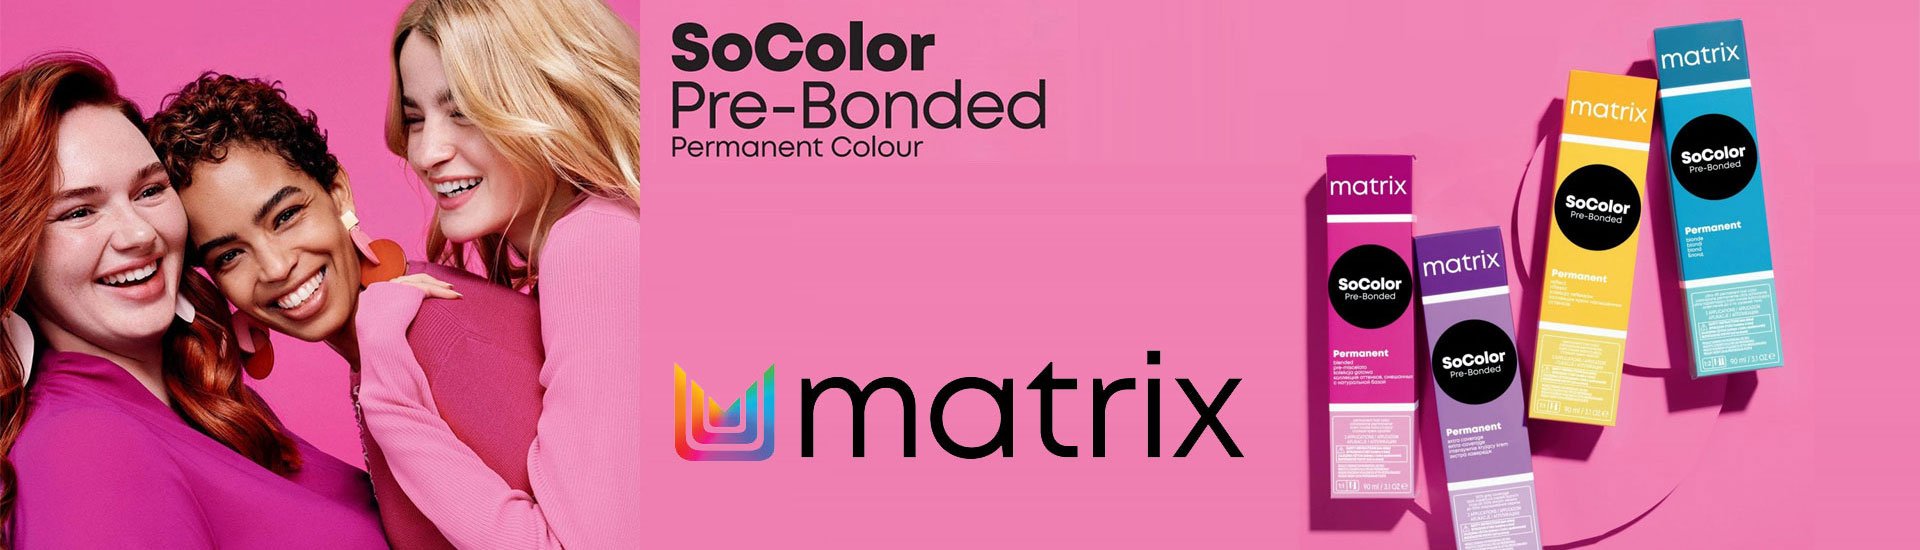 Matrix Socolor.Beauty трайна боя за коса - банер 1920 х 550